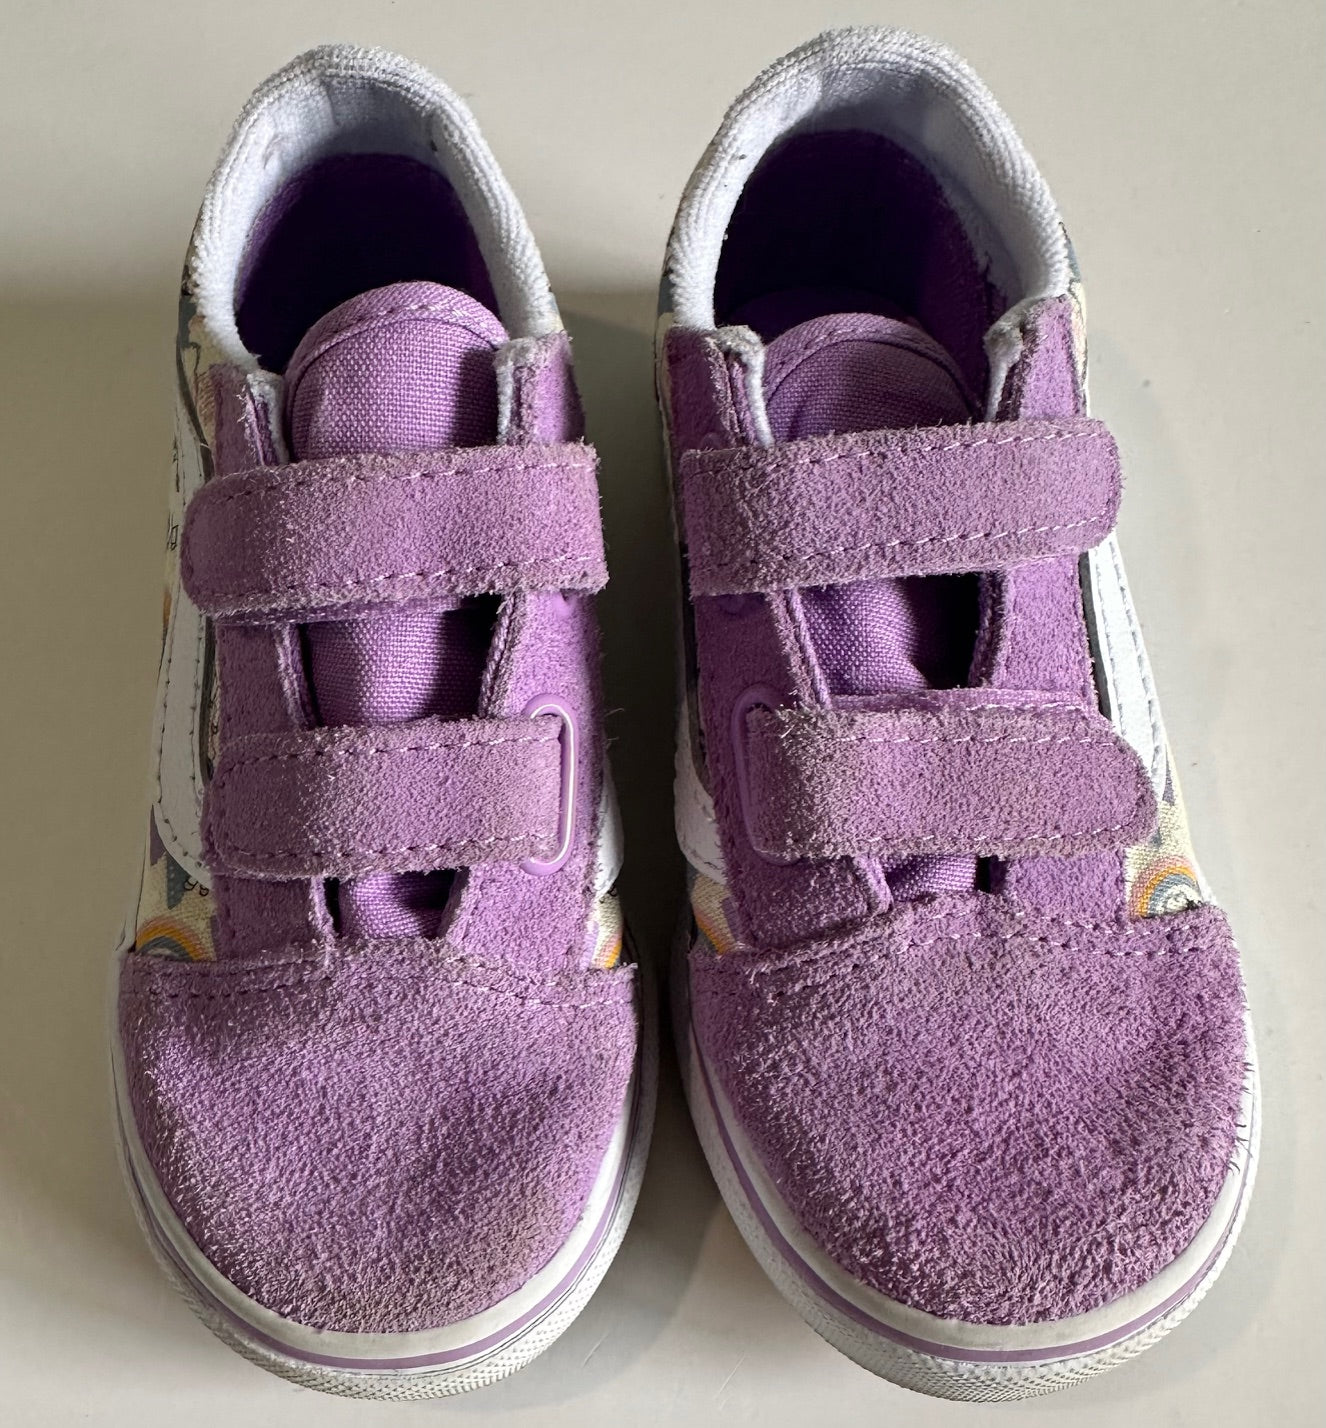 Vans, Purple Velcro Unicorn Shoes - Size 9T